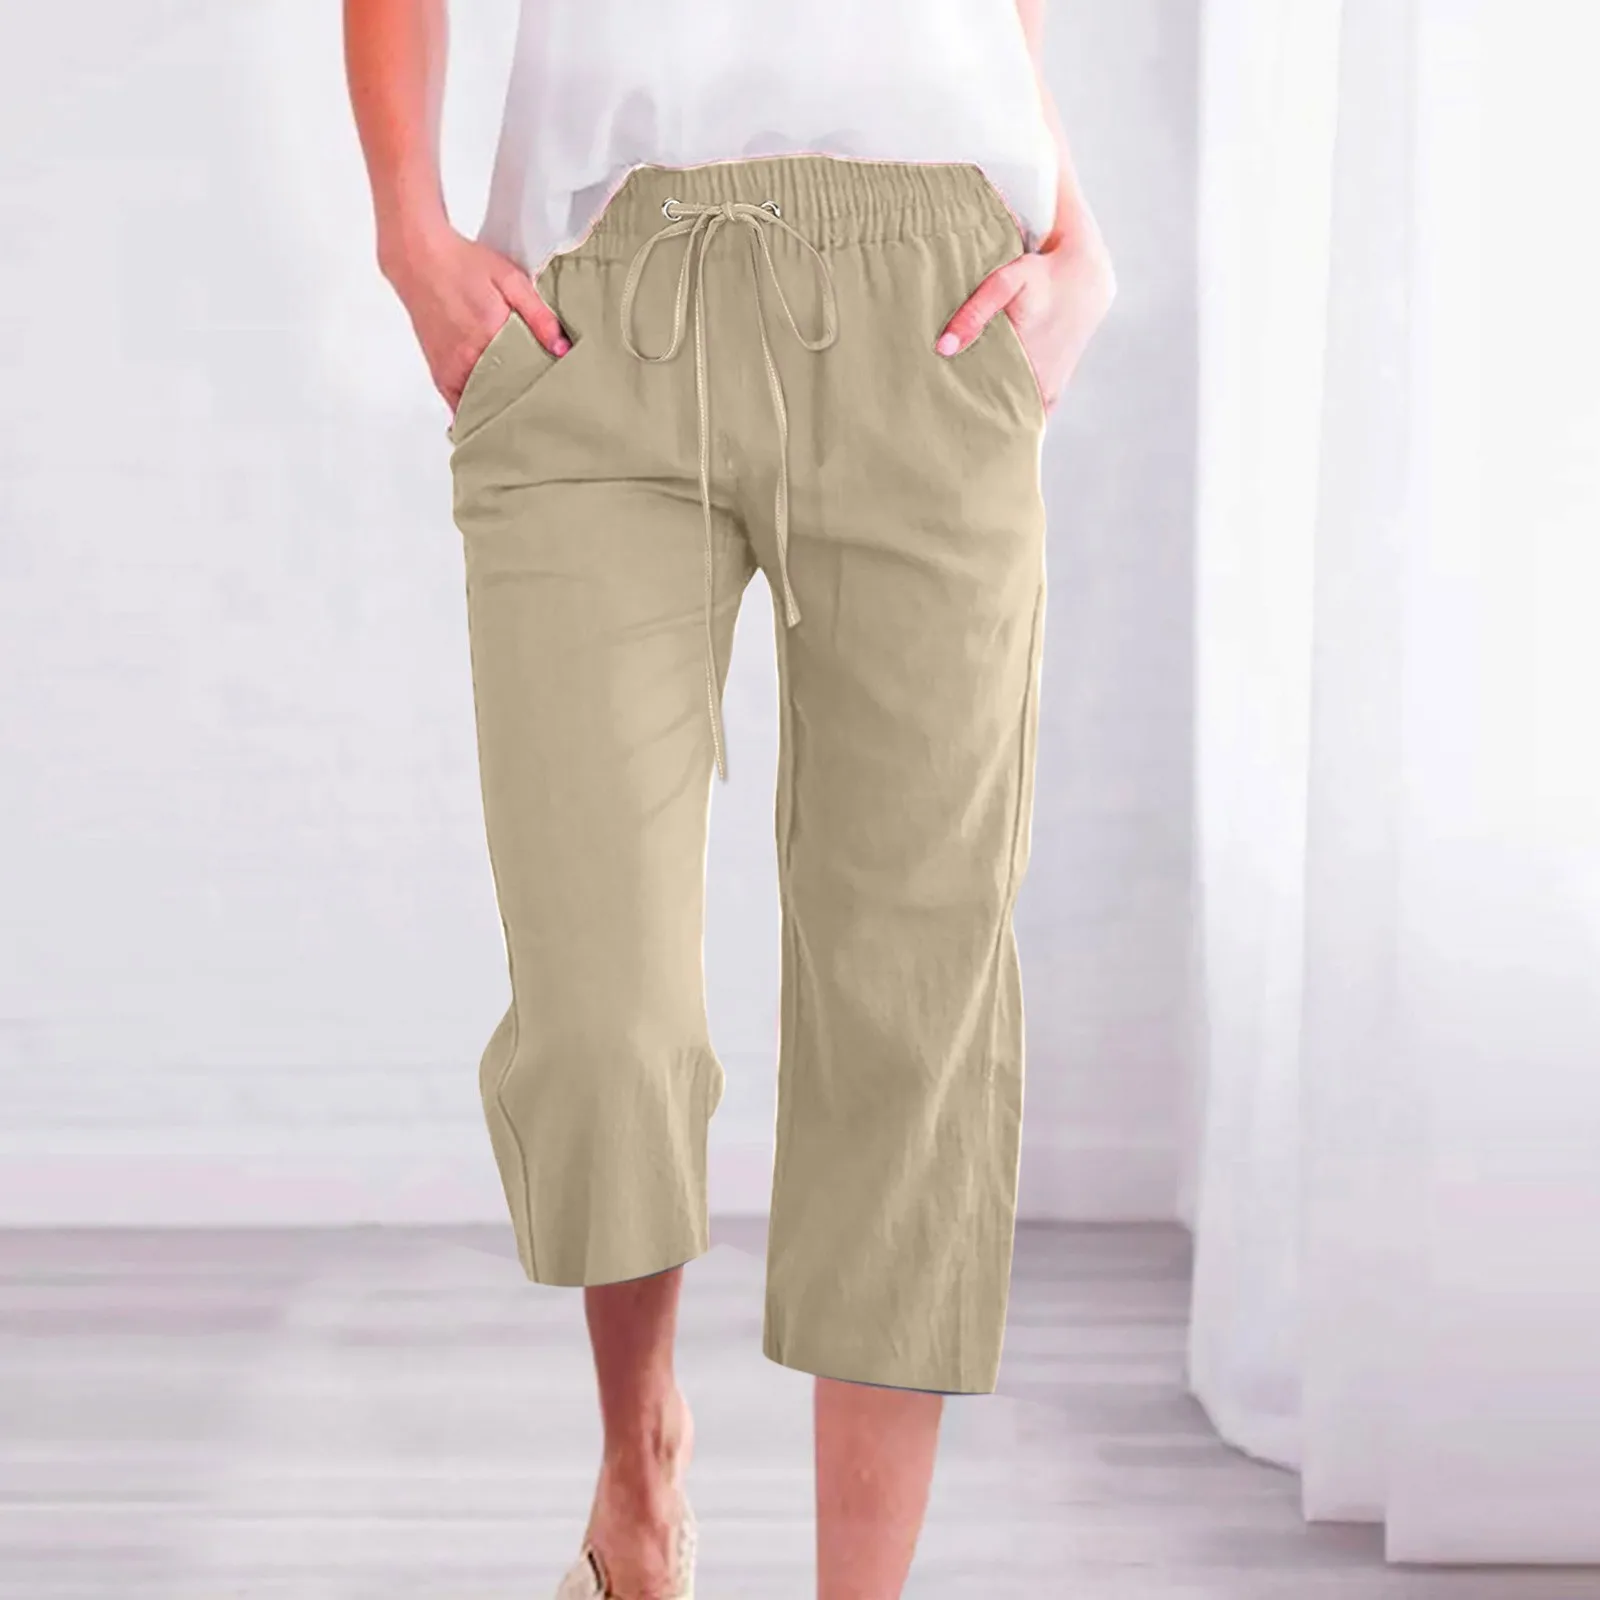 Cotton Linen Straight Pants Women Sweatpants Joggers Loose Fashion Fitness Wide Leg Pant Trouser Comfy Elastic Femme Casual Pant